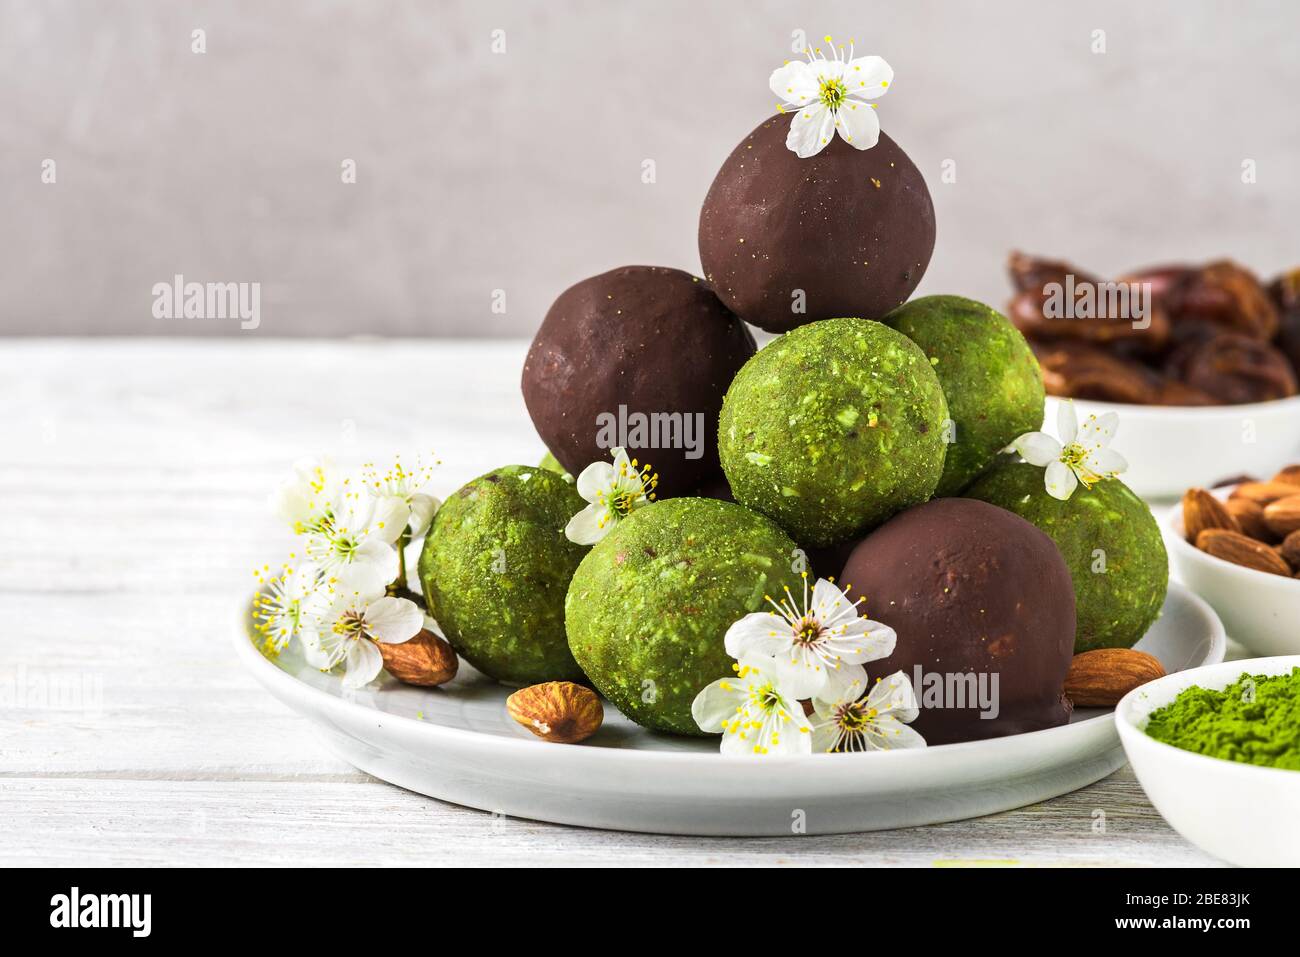 Bolas de energía verde matcha o bocados de energía con bolas de energía en chocolate glaseado con flores de primavera. Aperitivos saludables para la dieta vegetariana. Estilo de los alimentos. Primer plano Foto de stock